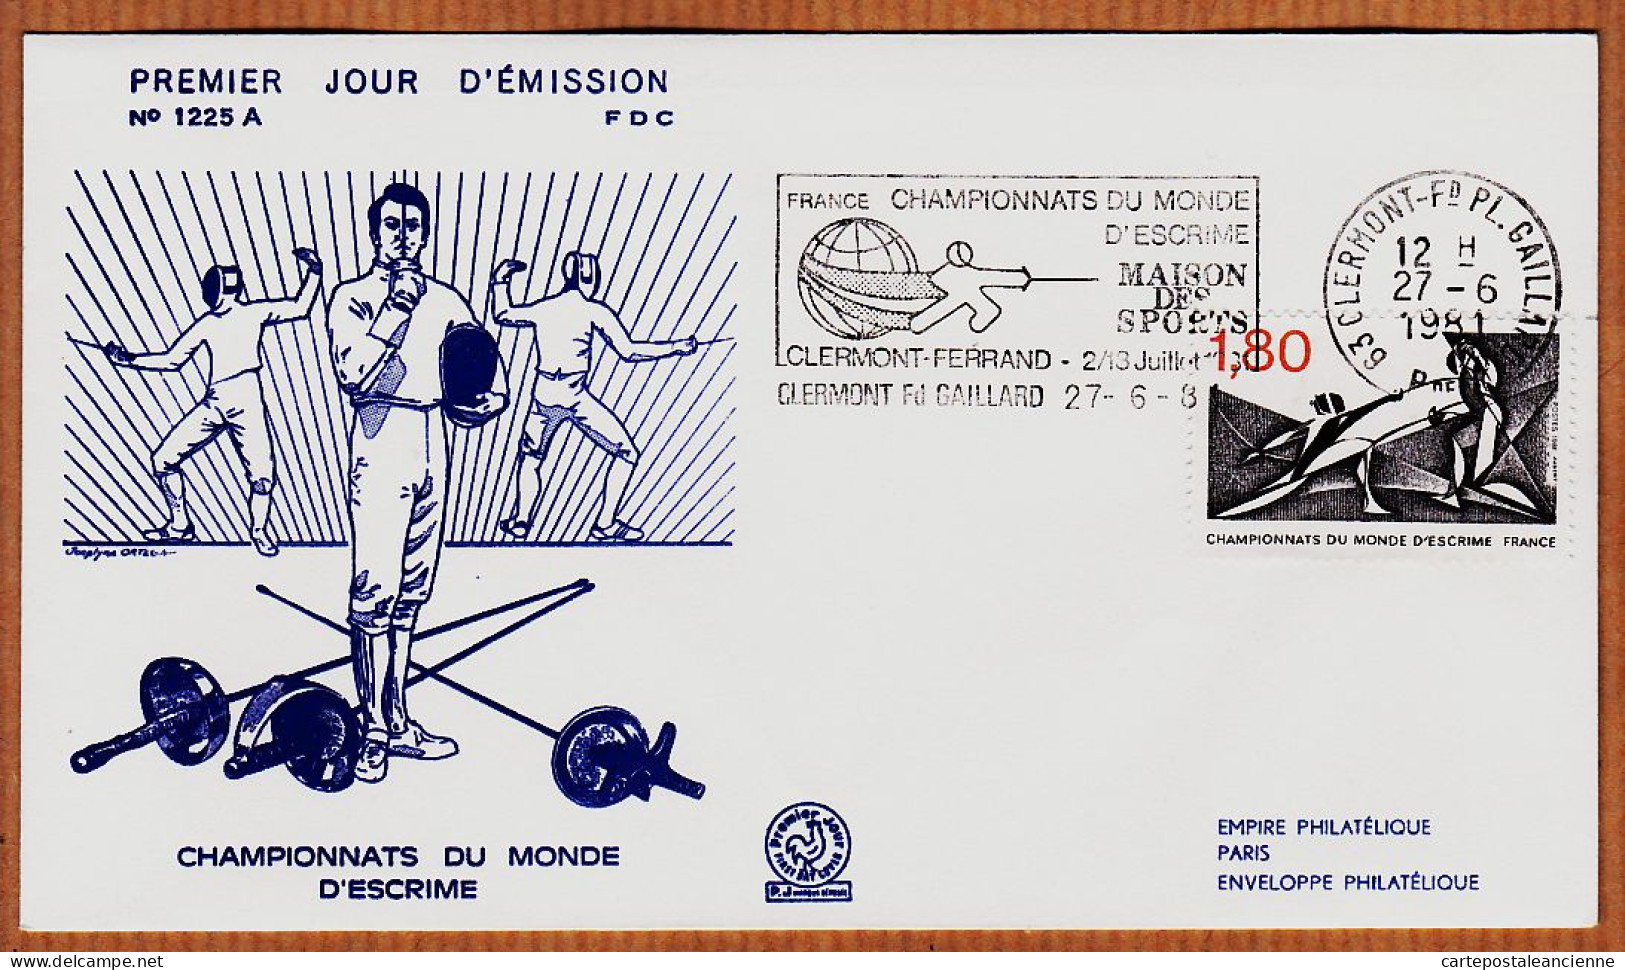 04765 / FDC CHAMPIONNATS Du MONDE D' ESCRIME 27 Juin 1981 Flamme CLERMONT-FERRAND Premier Jour Emission 1225 A - Scherma